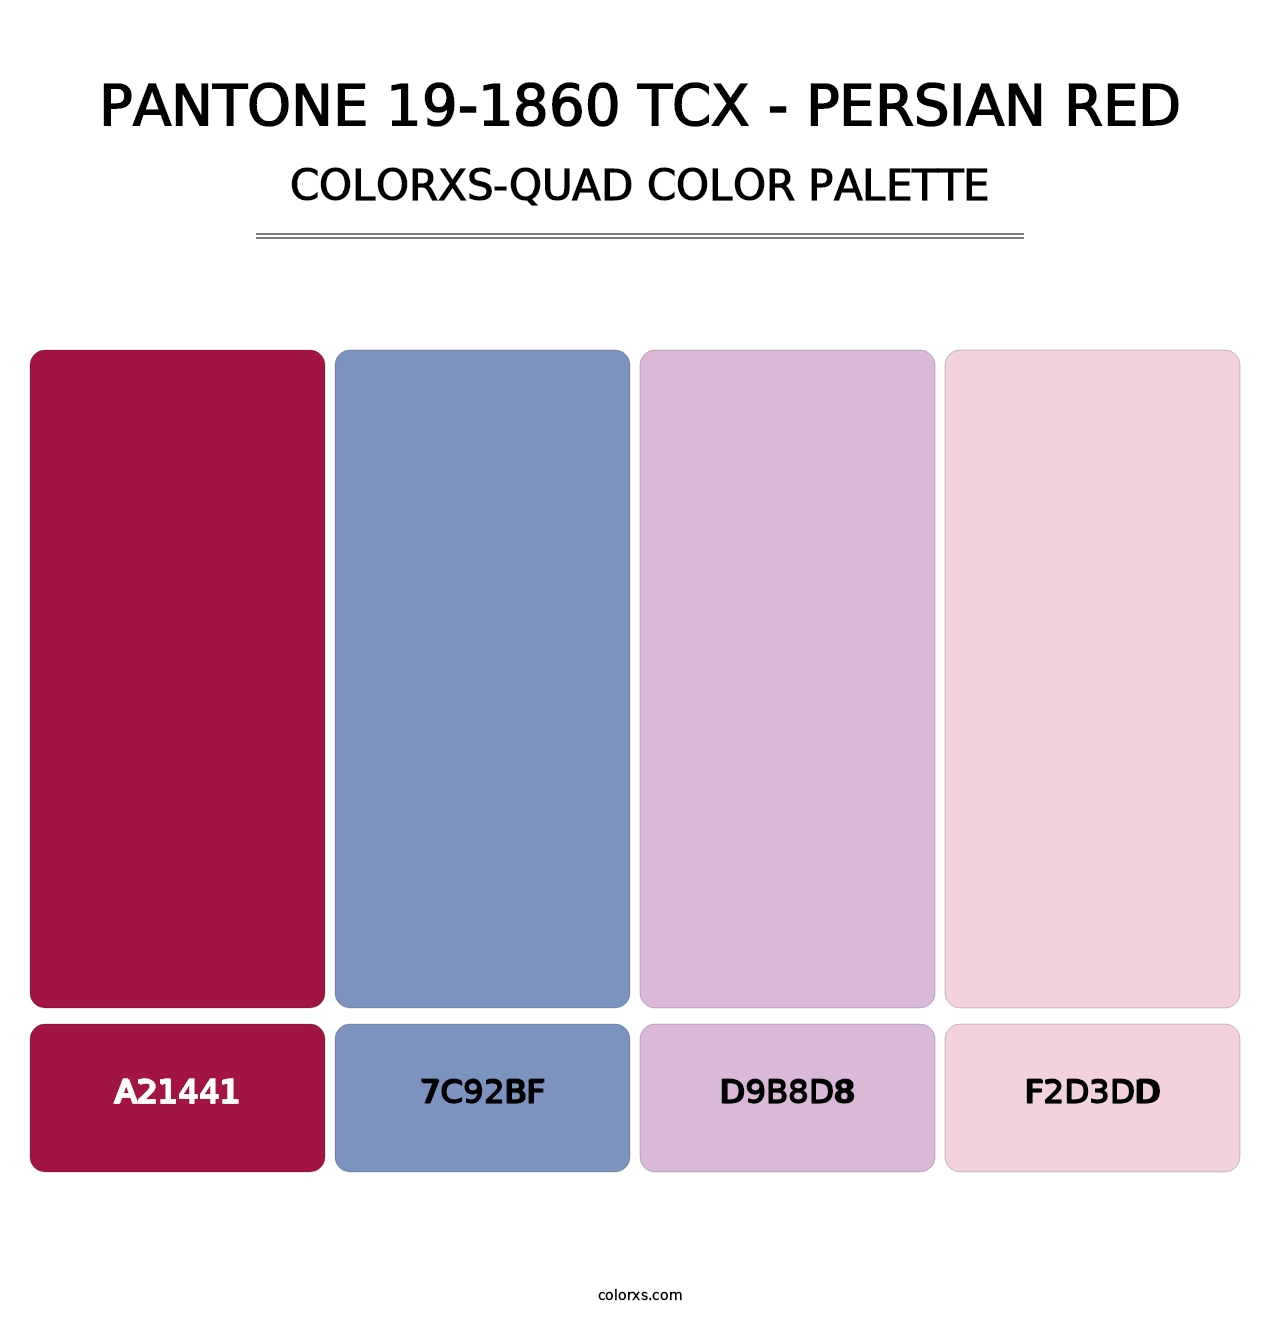 PANTONE 19-1860 TCX - Persian Red - Colorxs Quad Palette